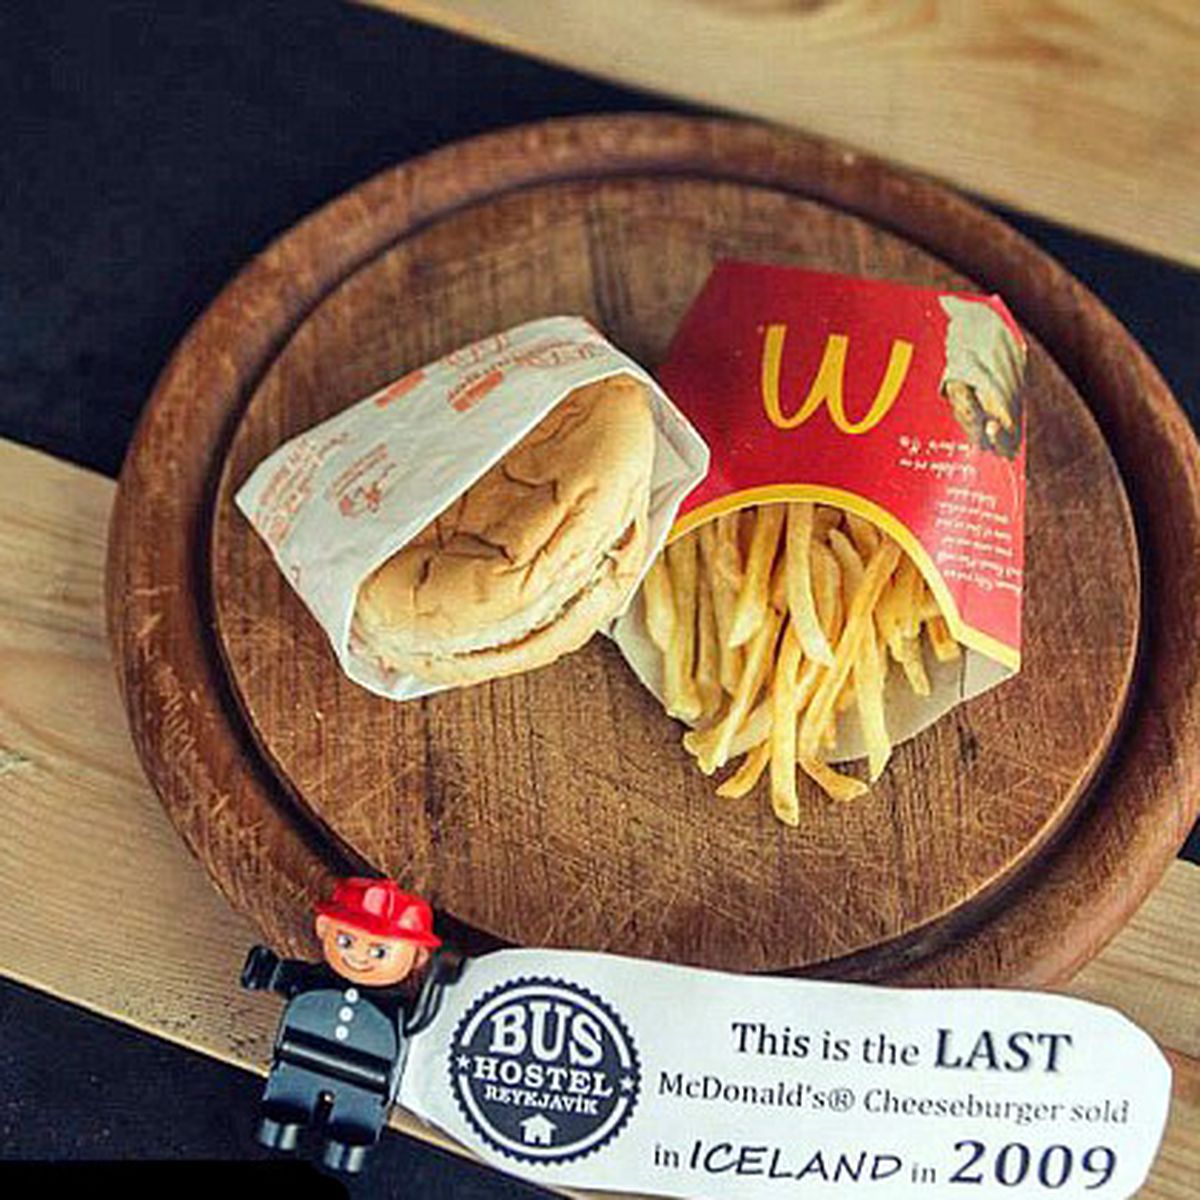 La última hamburguesa McDonald's que se vendió en Islandia, 1928 días  después